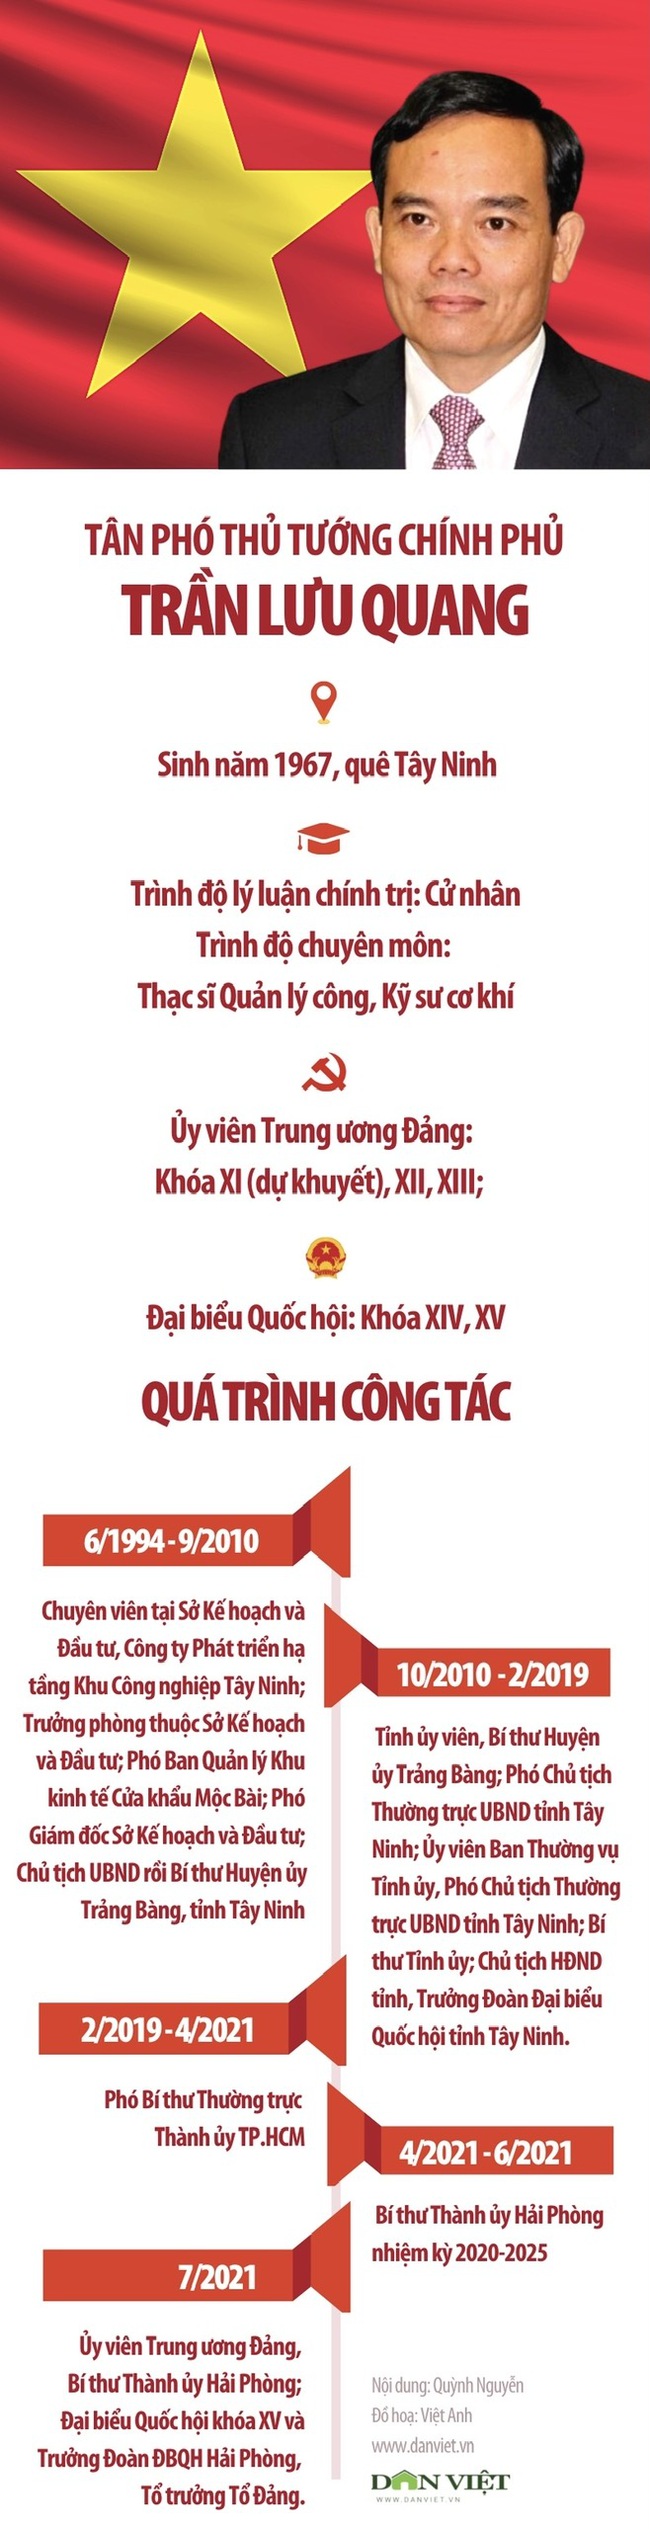 Chân dung tân Phó Thủ tướng Chính phủ Trần Lưu Quang - Ảnh 1.